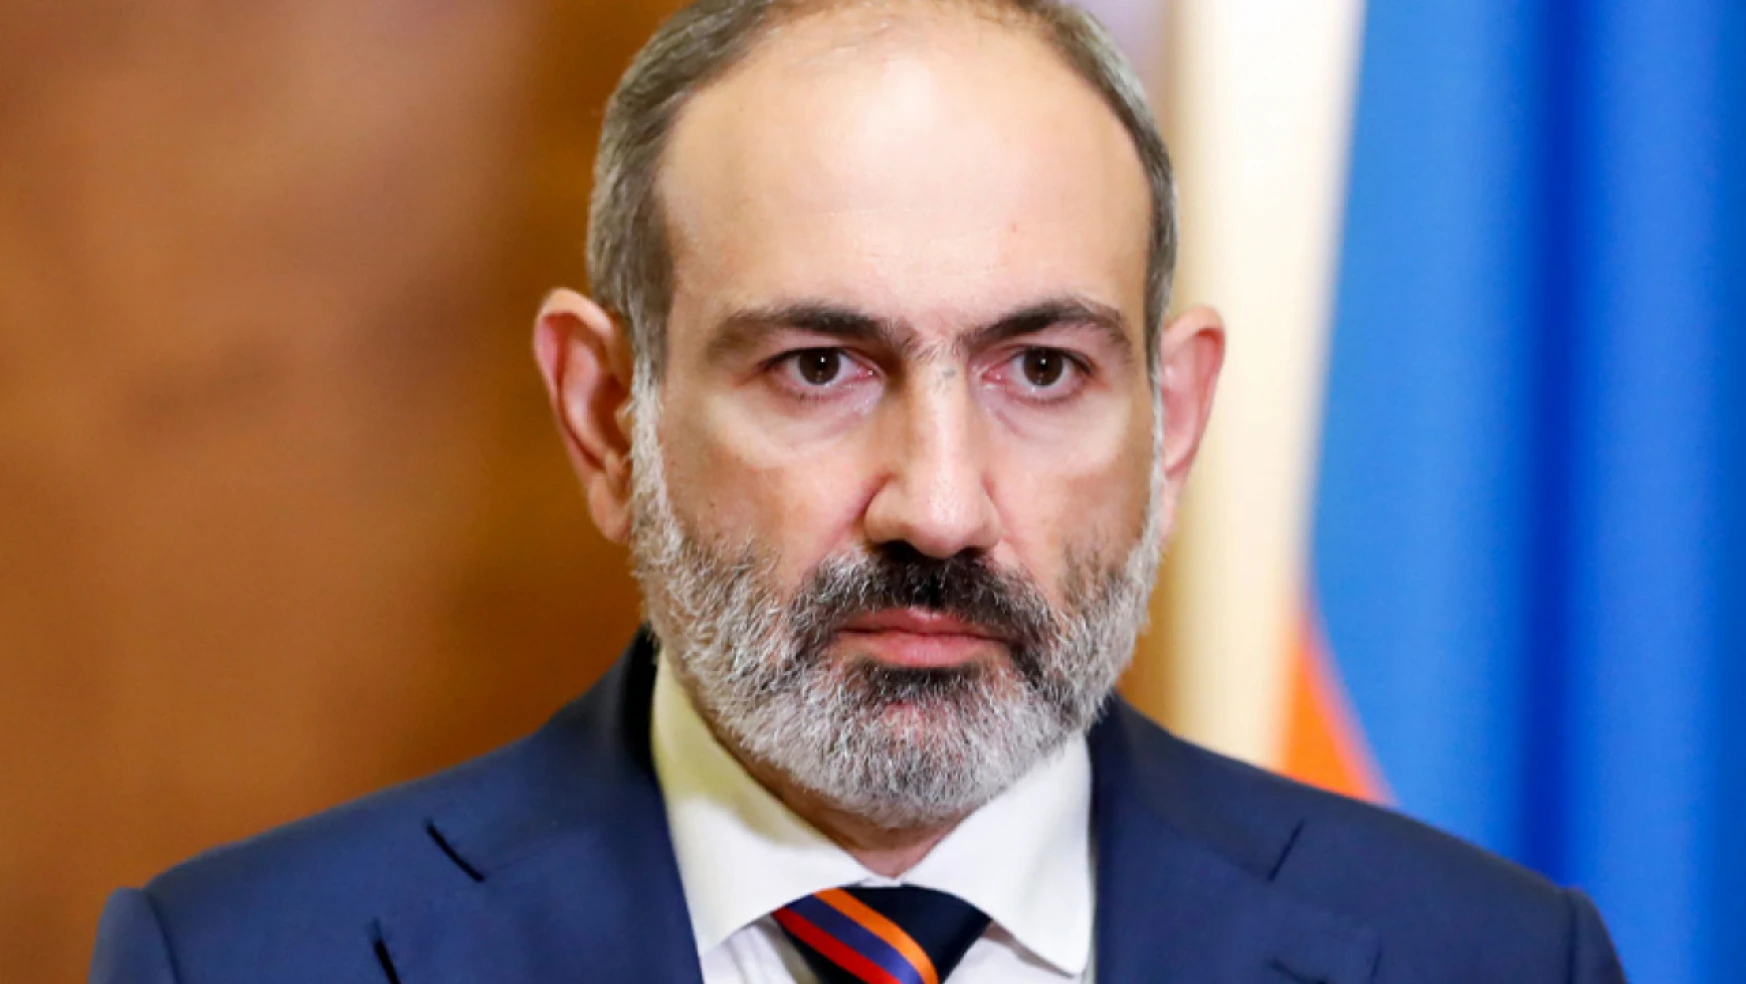 Rus barış gücü Karabağ'daki durumun istikrara kavuşturulması için önlem almalı